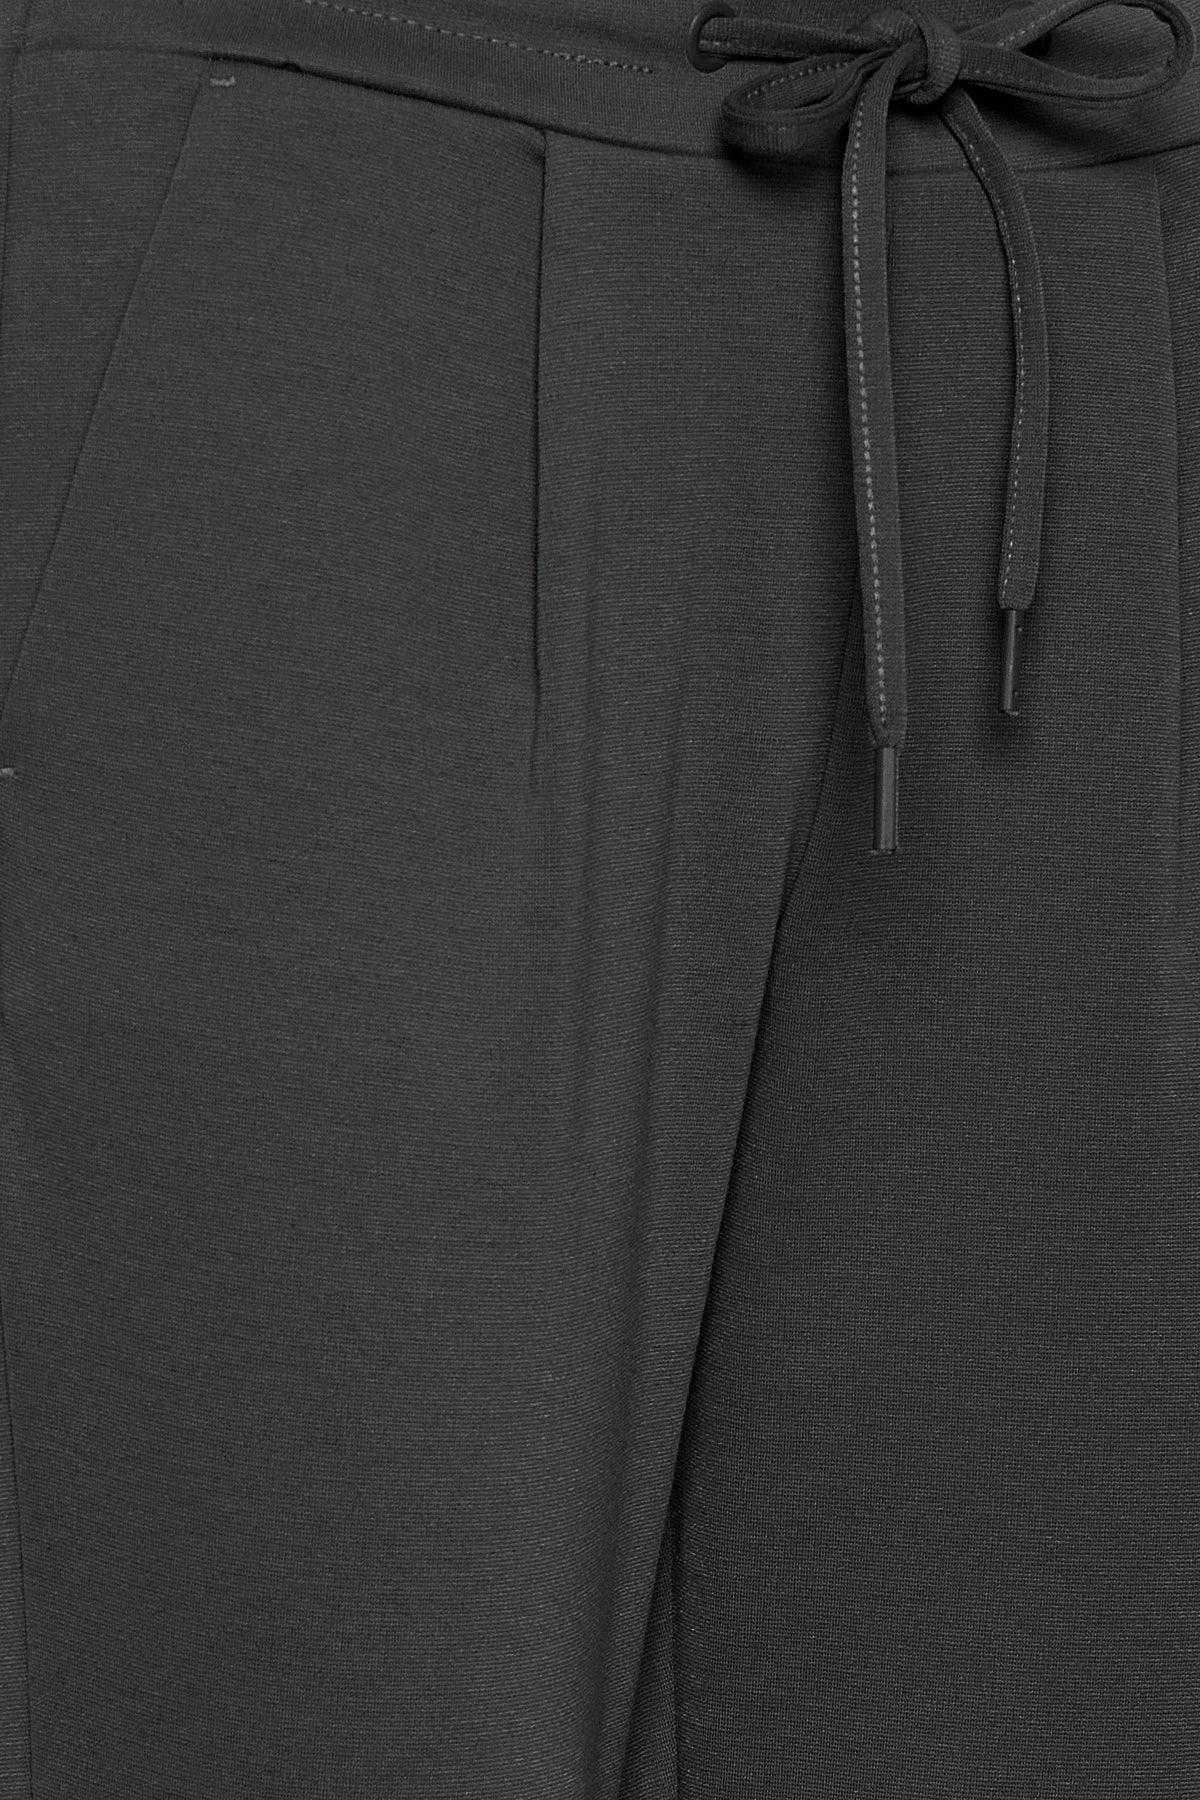 Pantalones ICHI Kate Cropped Dark Grey Melange - ECRU